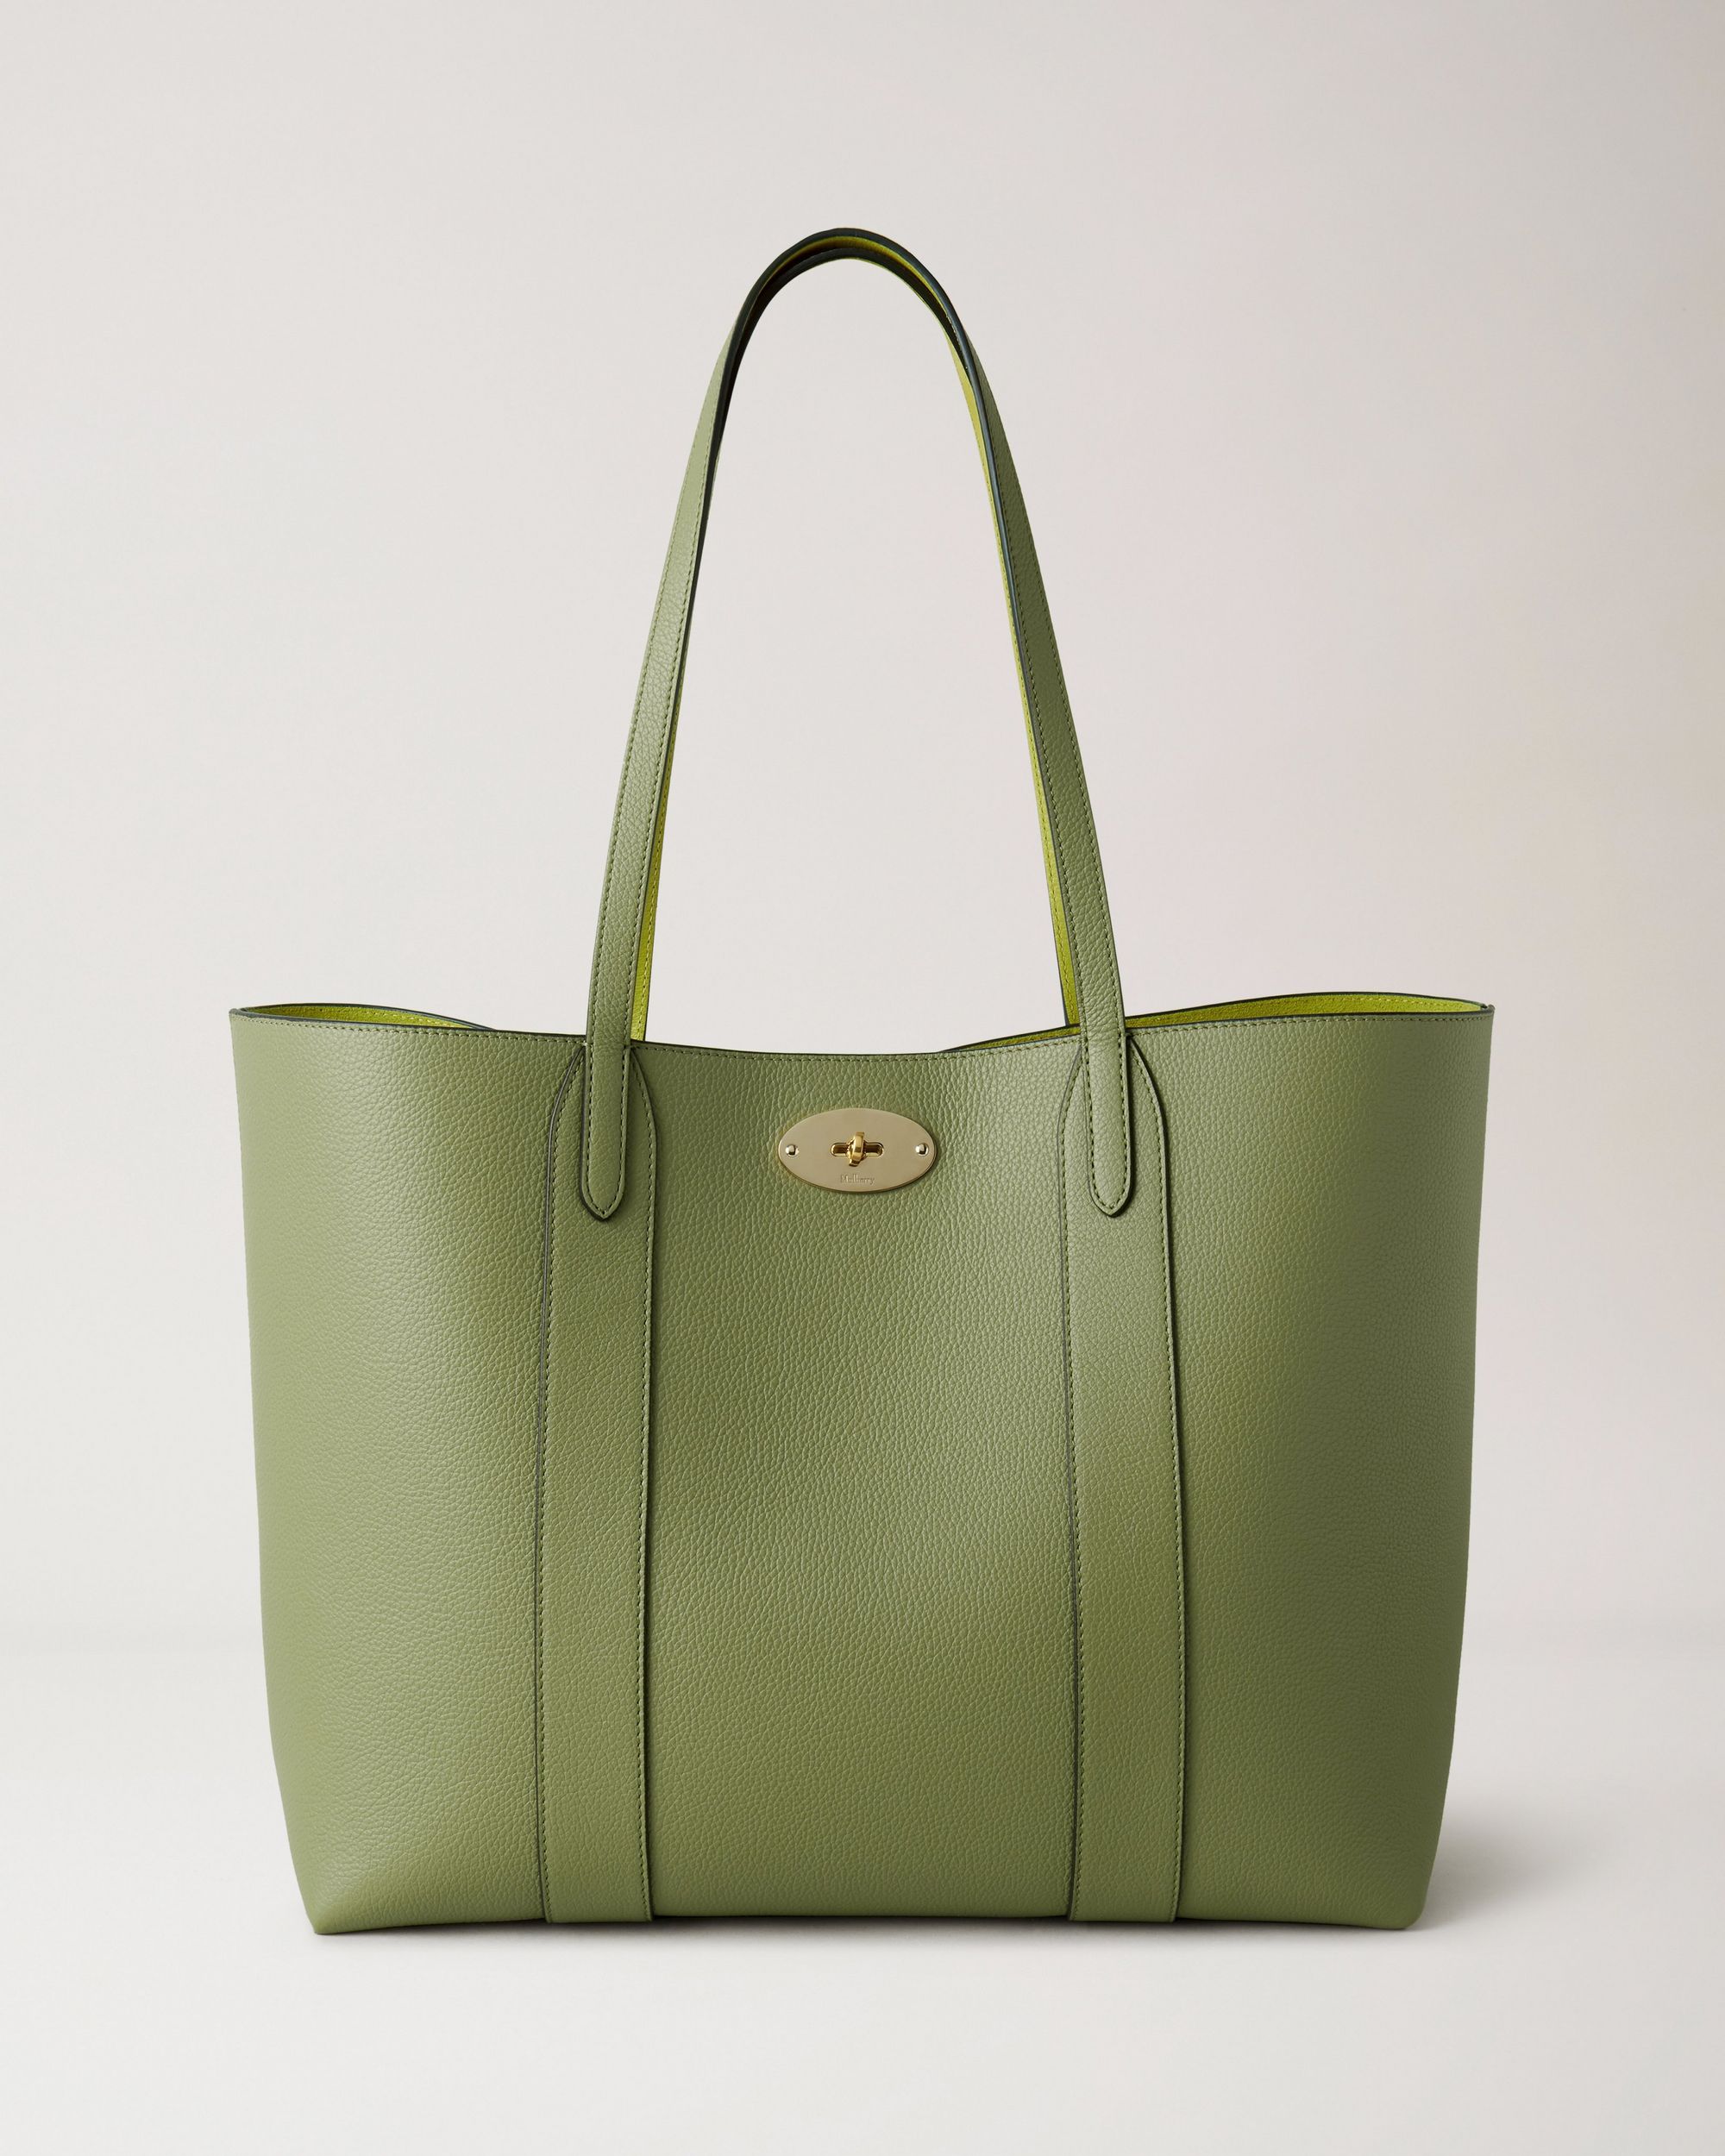 Green aesthetic luxury handbag